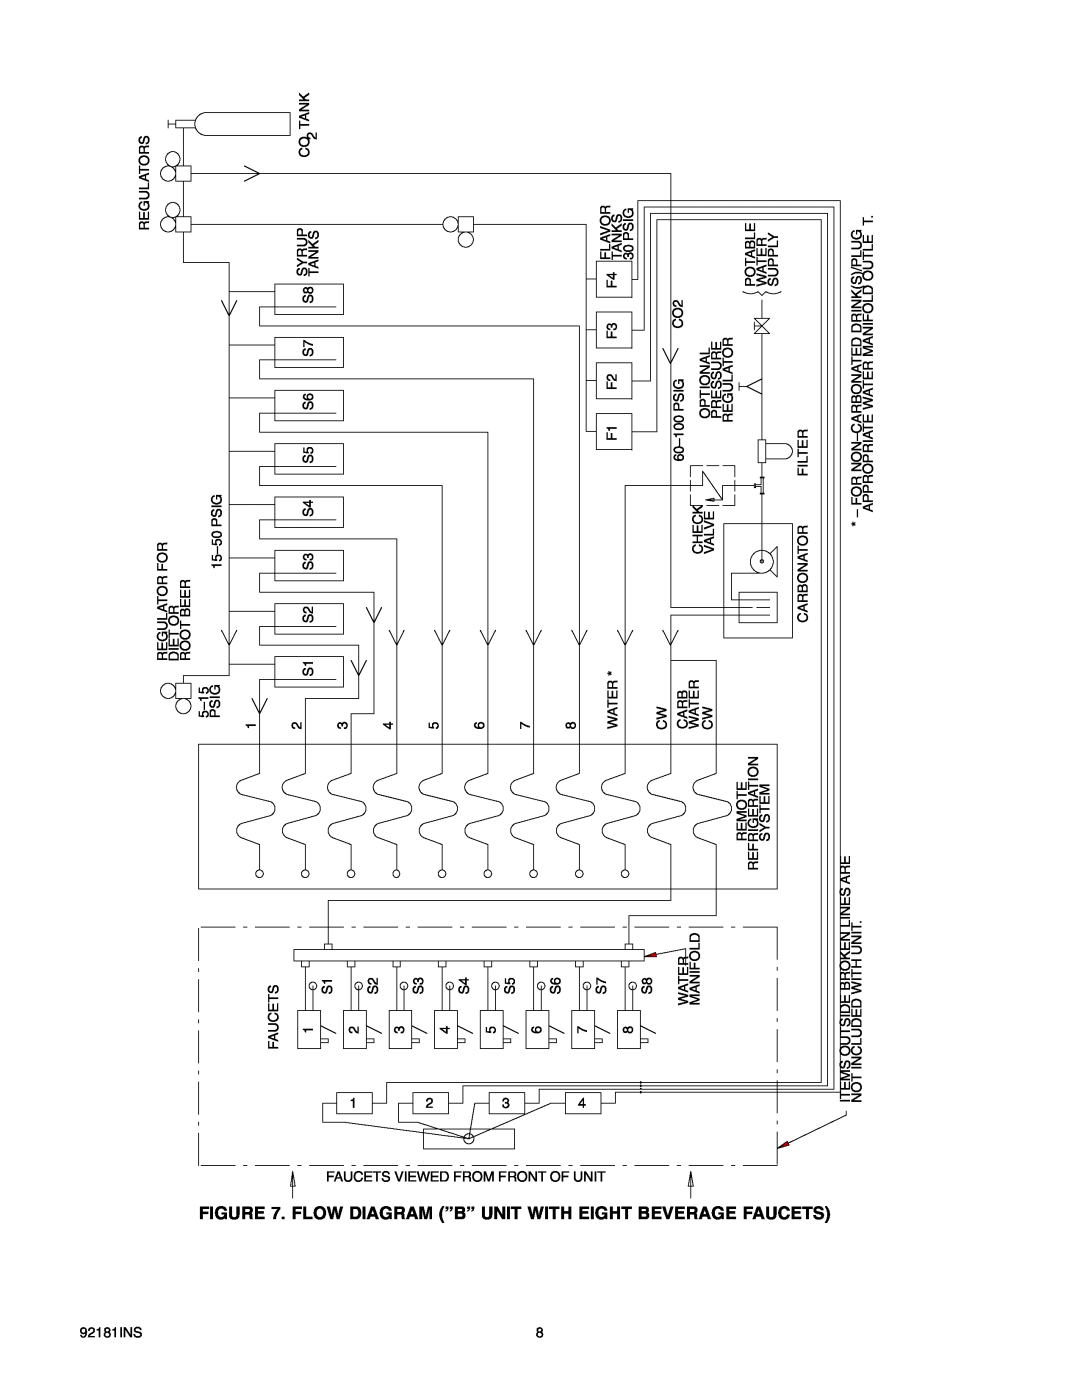 Cornelius Enduro-200/250 installation manual Flow Diagram ”B” Unit With, Eight, Beveragefaucets 